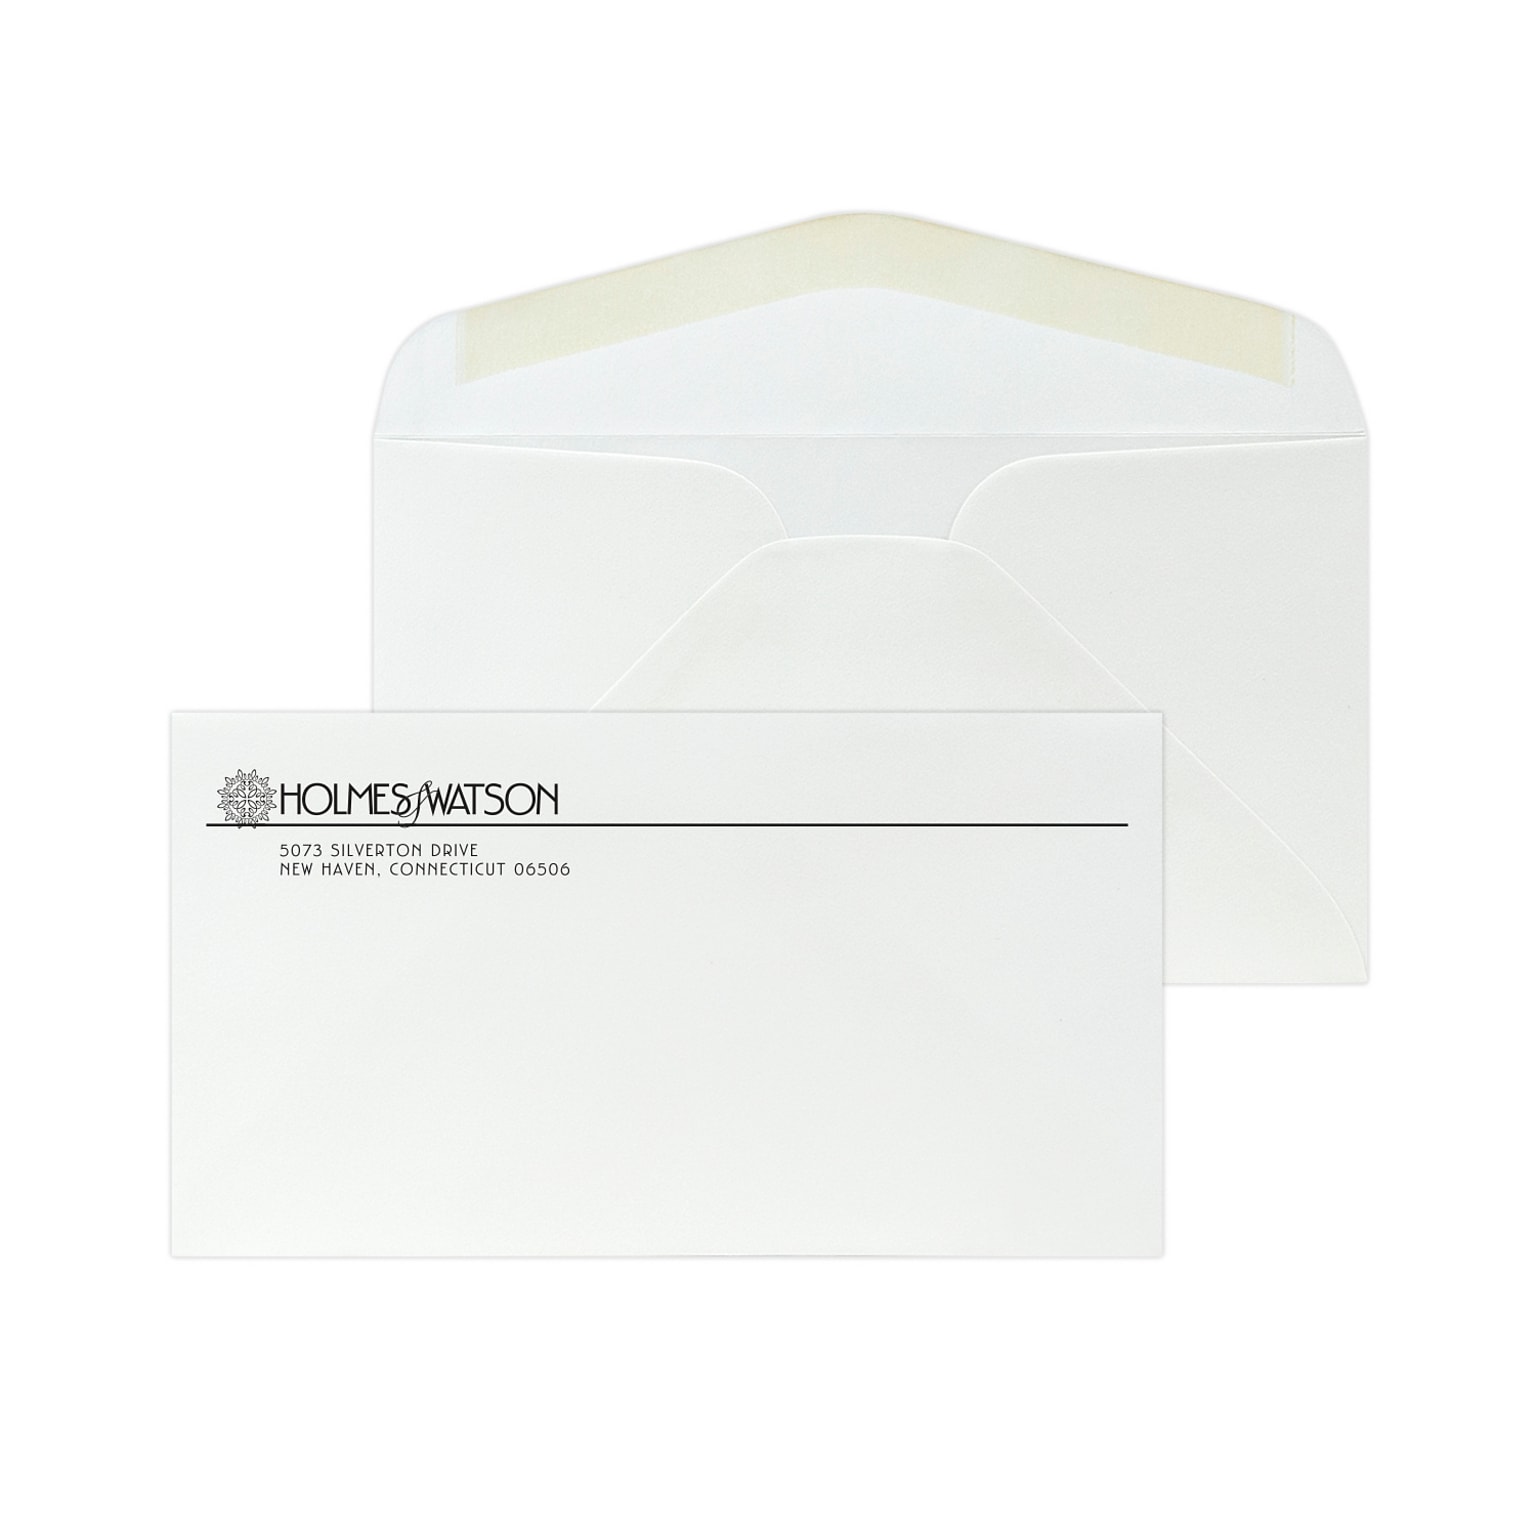 Custom #6-3/4 Standard Envelopes, 3 5/8 x 6 1/2, 24# White 25% Cotton Bond, 1 Standard Ink, 250 / Pack